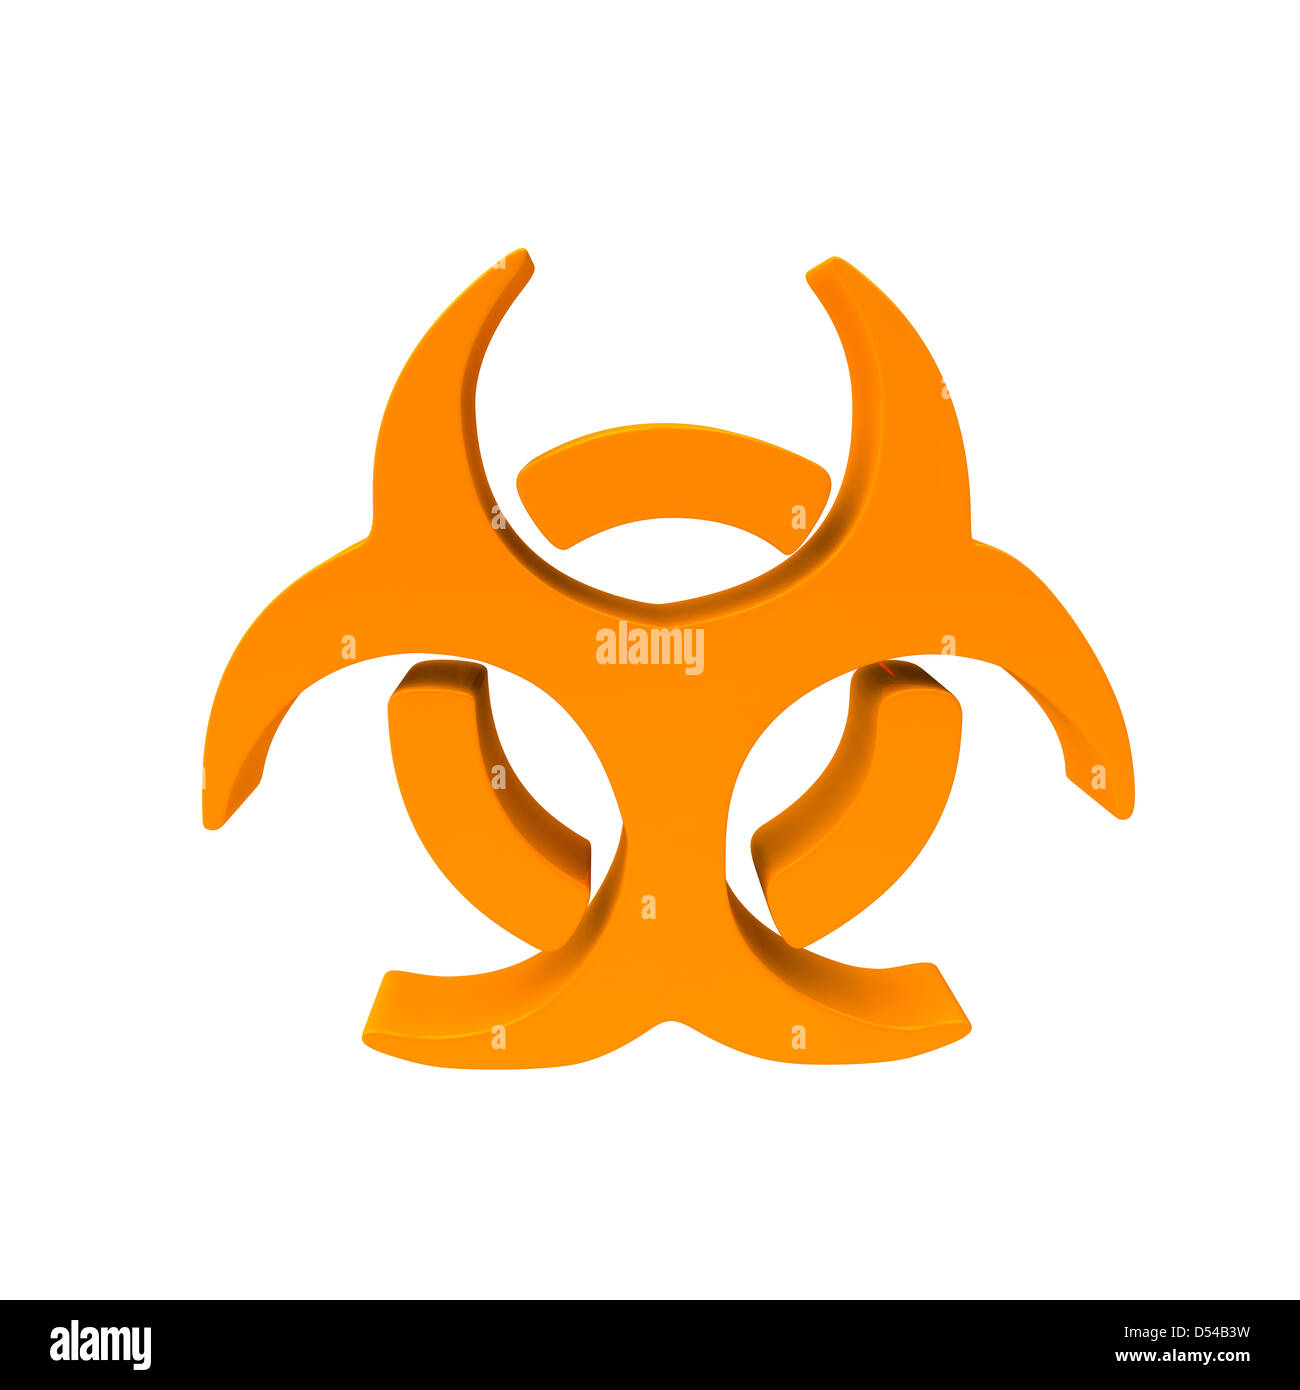 L'icône de virus sous la forme d'une icône met en garde les gens ne se doutaient du danger des armes biologiques Banque D'Images